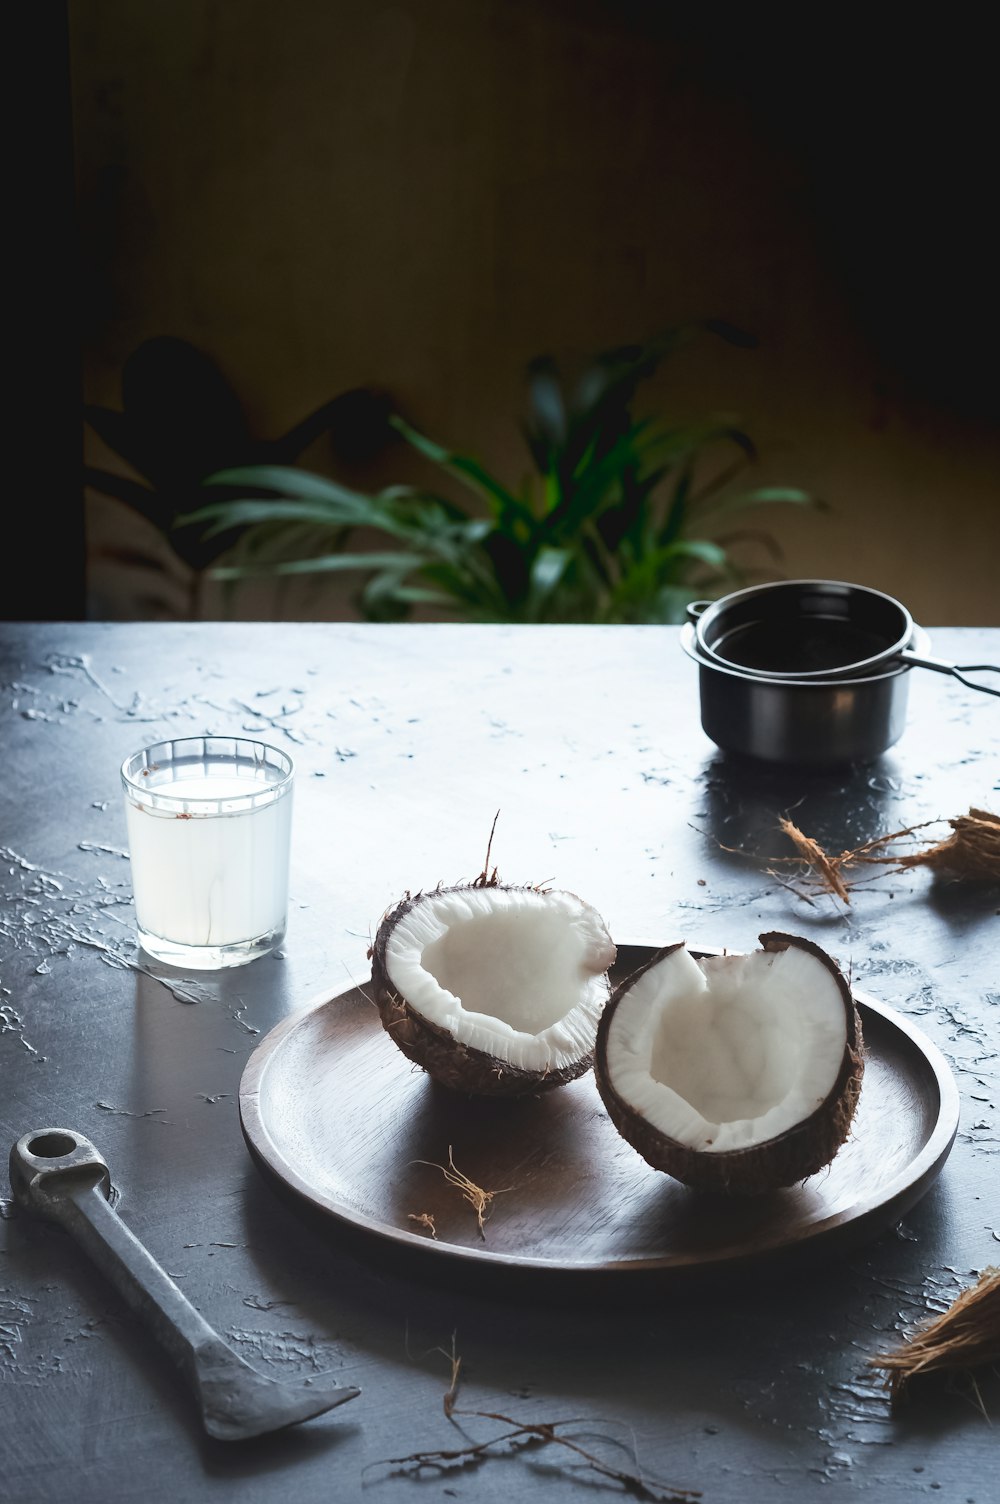 sliced apple beside black ceramic mug on white wooden table